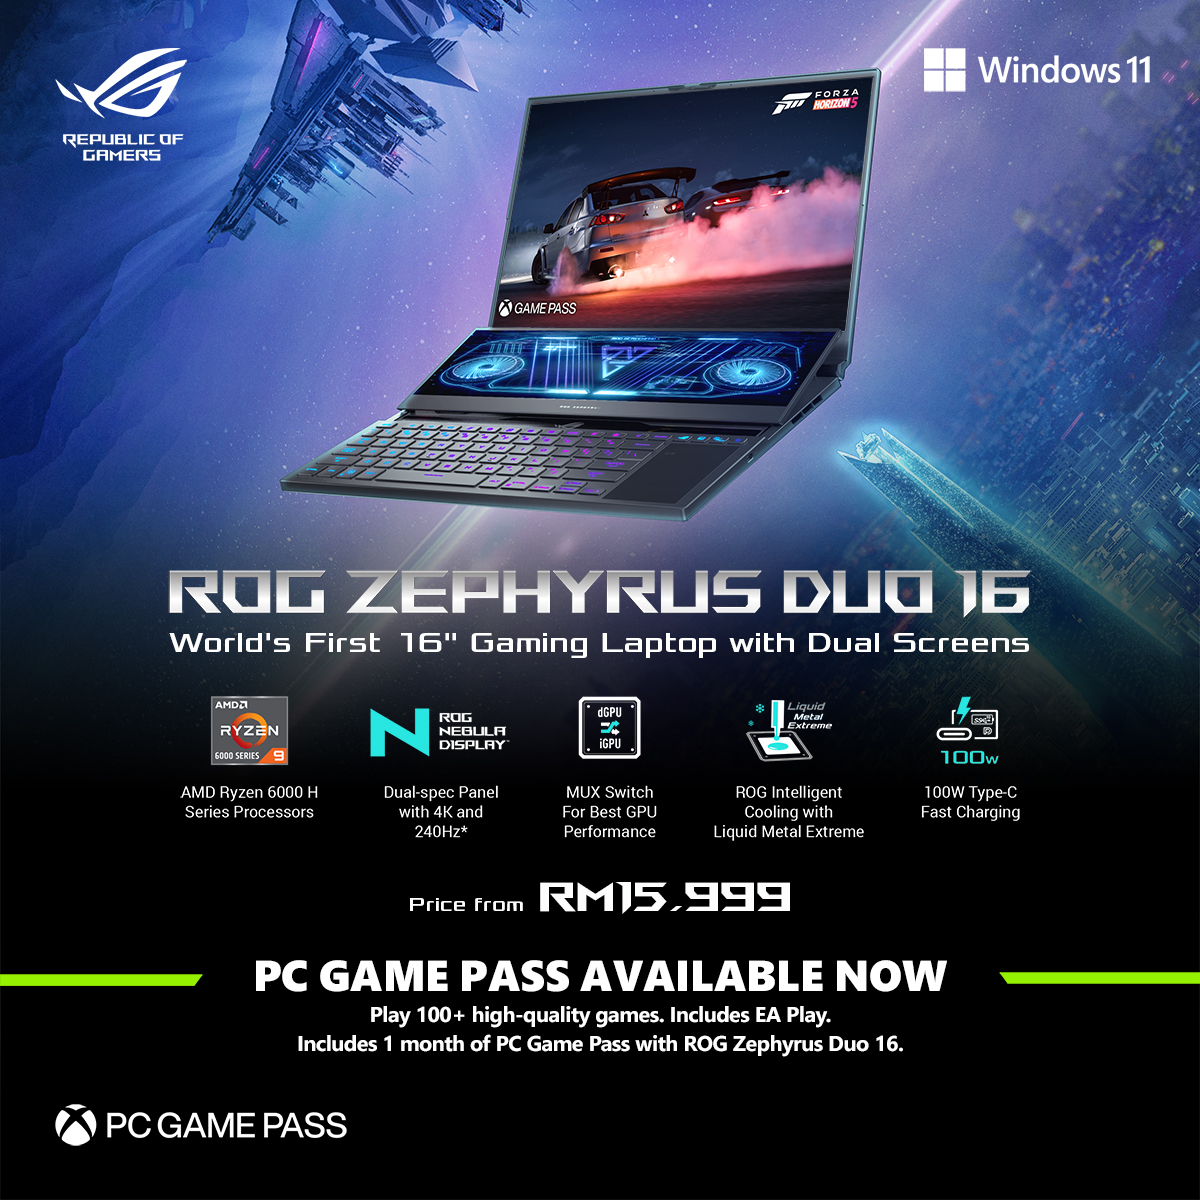 ROG Zephyrus Duo 16 pricing